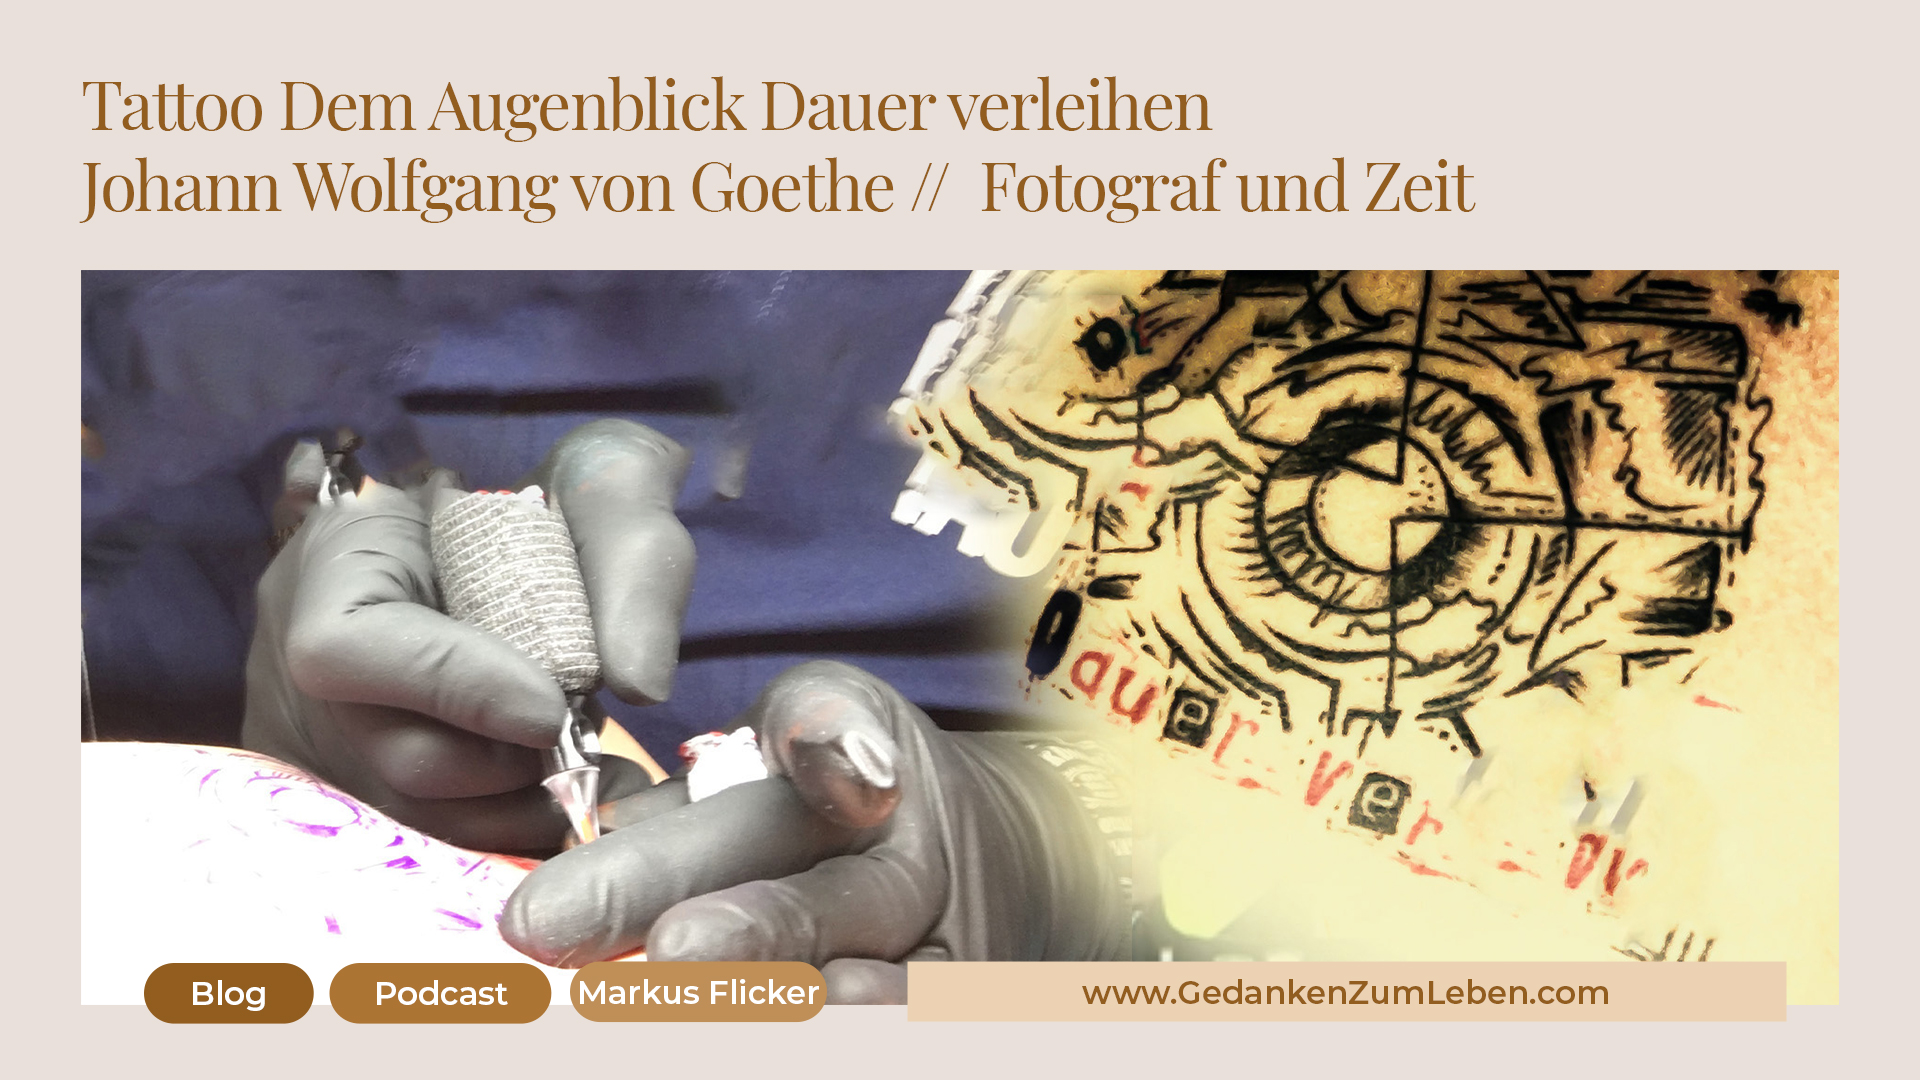 Tattoo: „Dem Augenblick Dauer verleihen“ von Johann Wolfgang von Goethe. Über Fotograf und Zeit